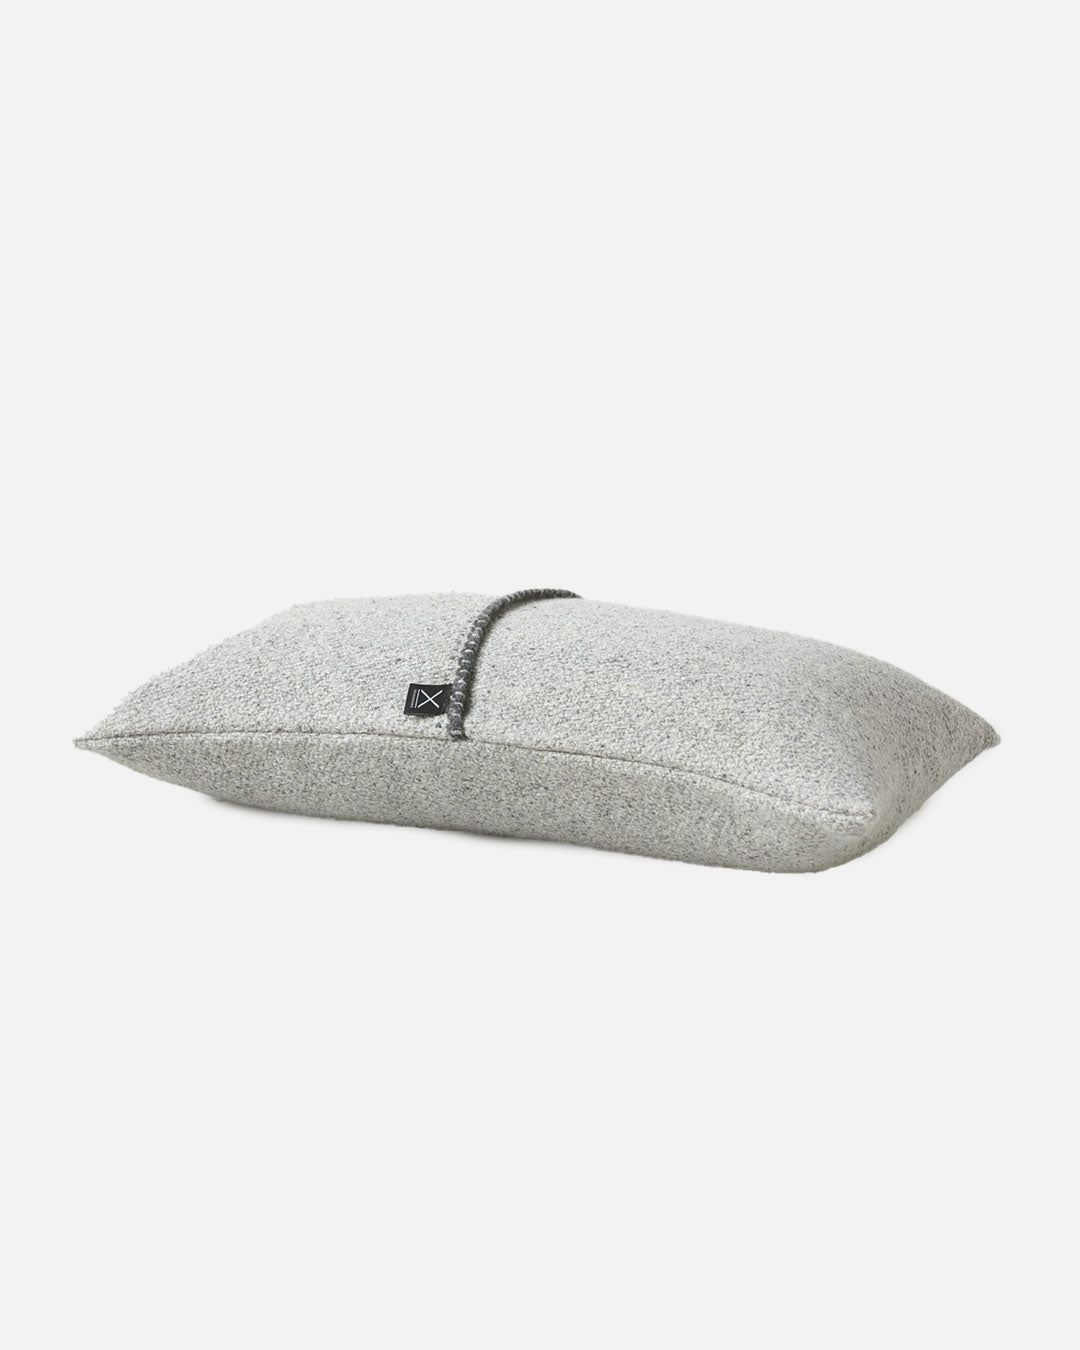 Hydra Cushion Cover in Grey